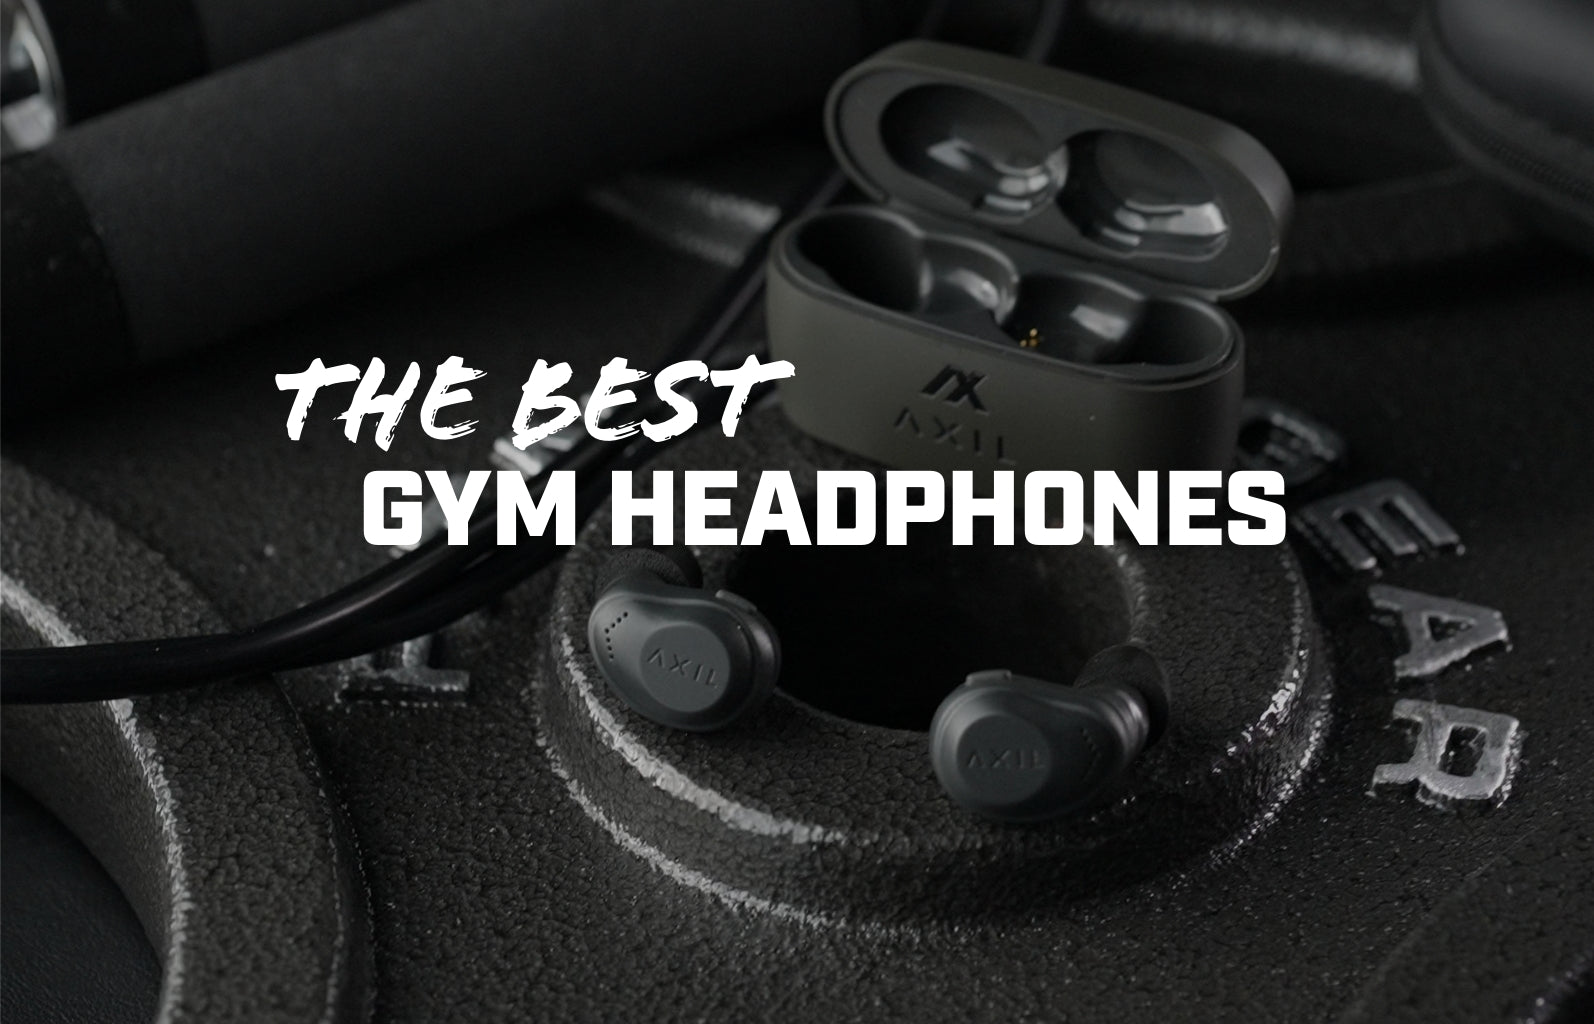 Choosing The Best Gym Headphones